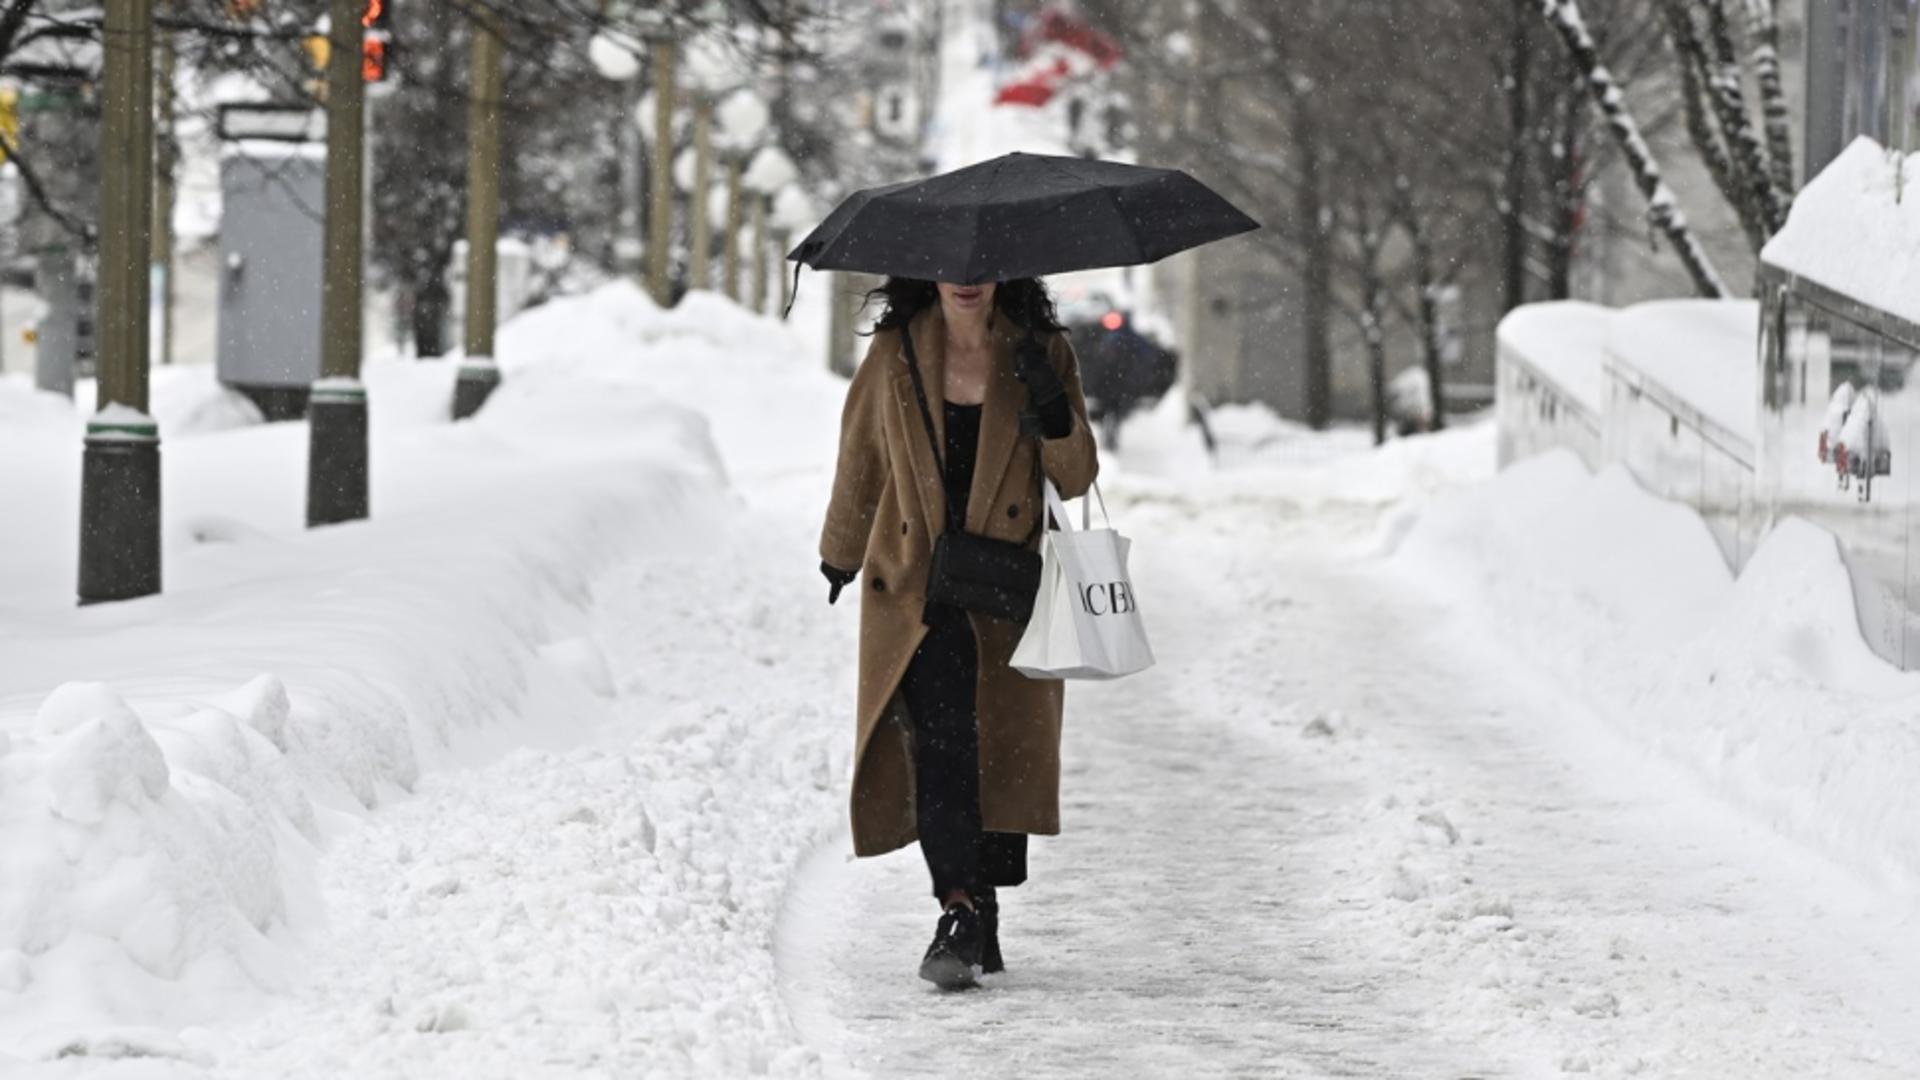 Prognoza meteo pe o lună - iarna lovește în forță / Foto: Profi Media